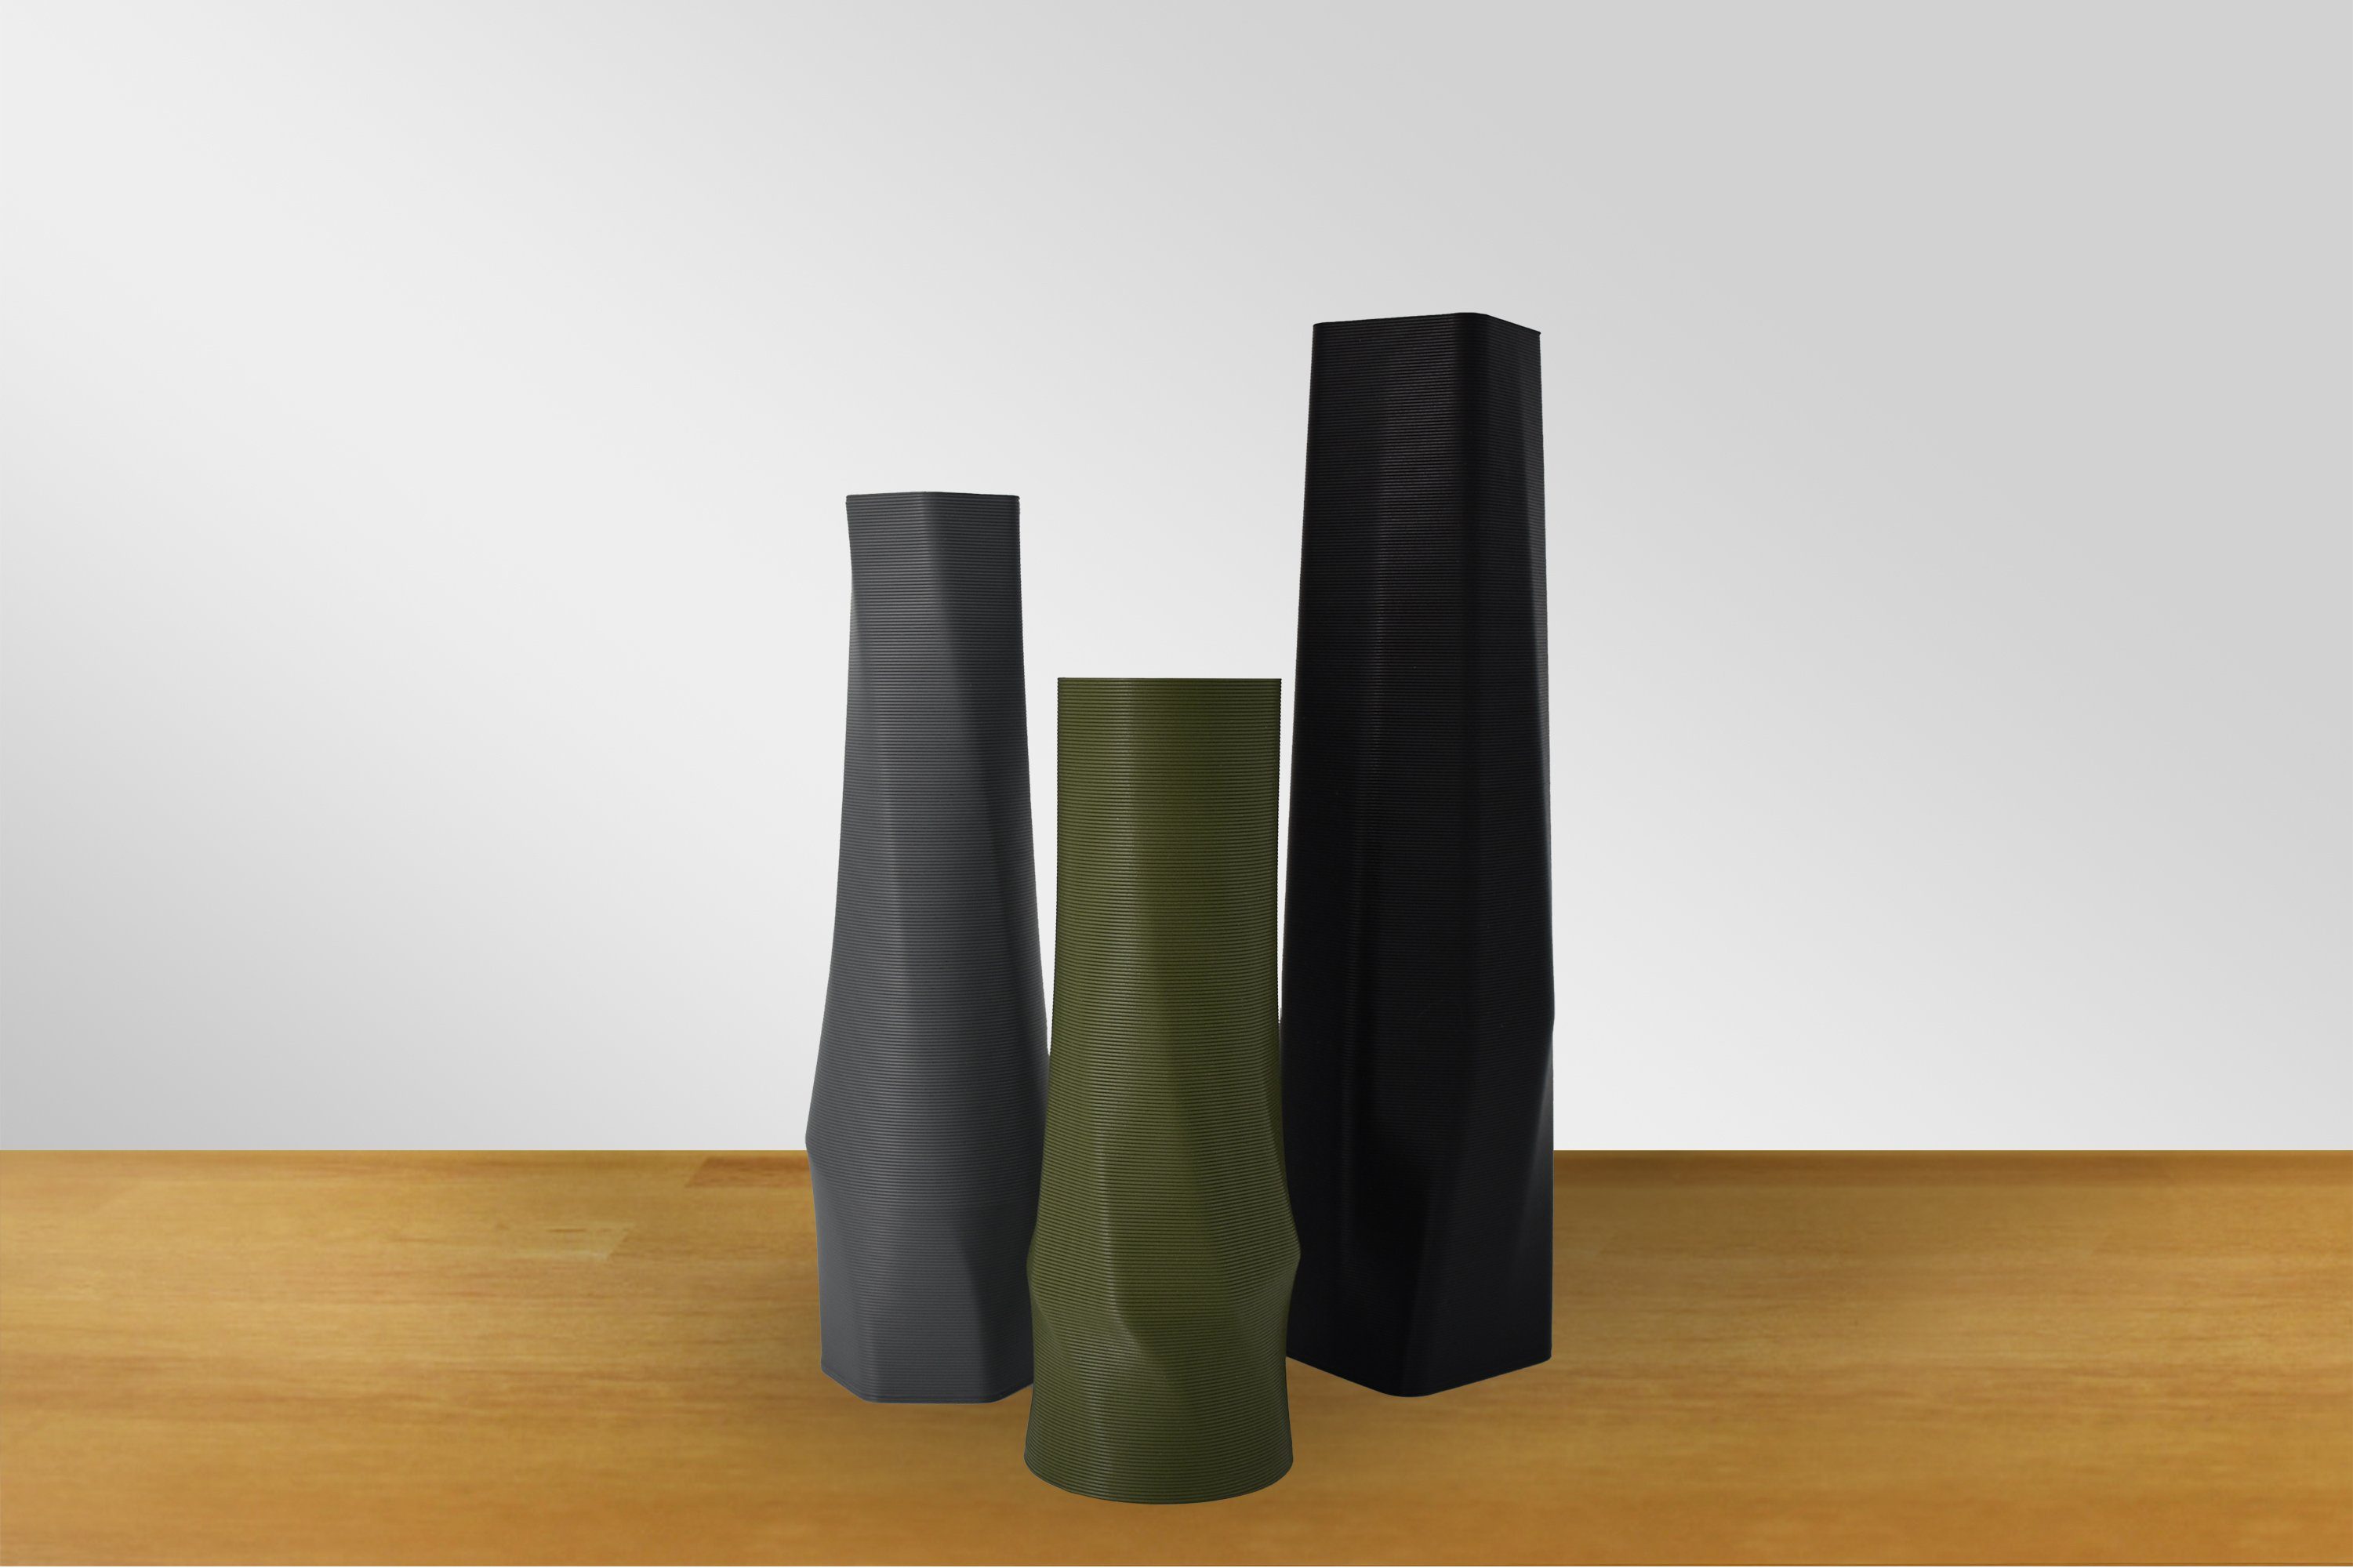 - Farben, Shapes Dekovase Hellgrau vase viele - (basic), 3D Vase), innerhalb Struktur 100% des (Einzelmodell, (Rillung) the Decorations Leichte Materials circle Wasserdicht; Vasen, 3D-Druck 1